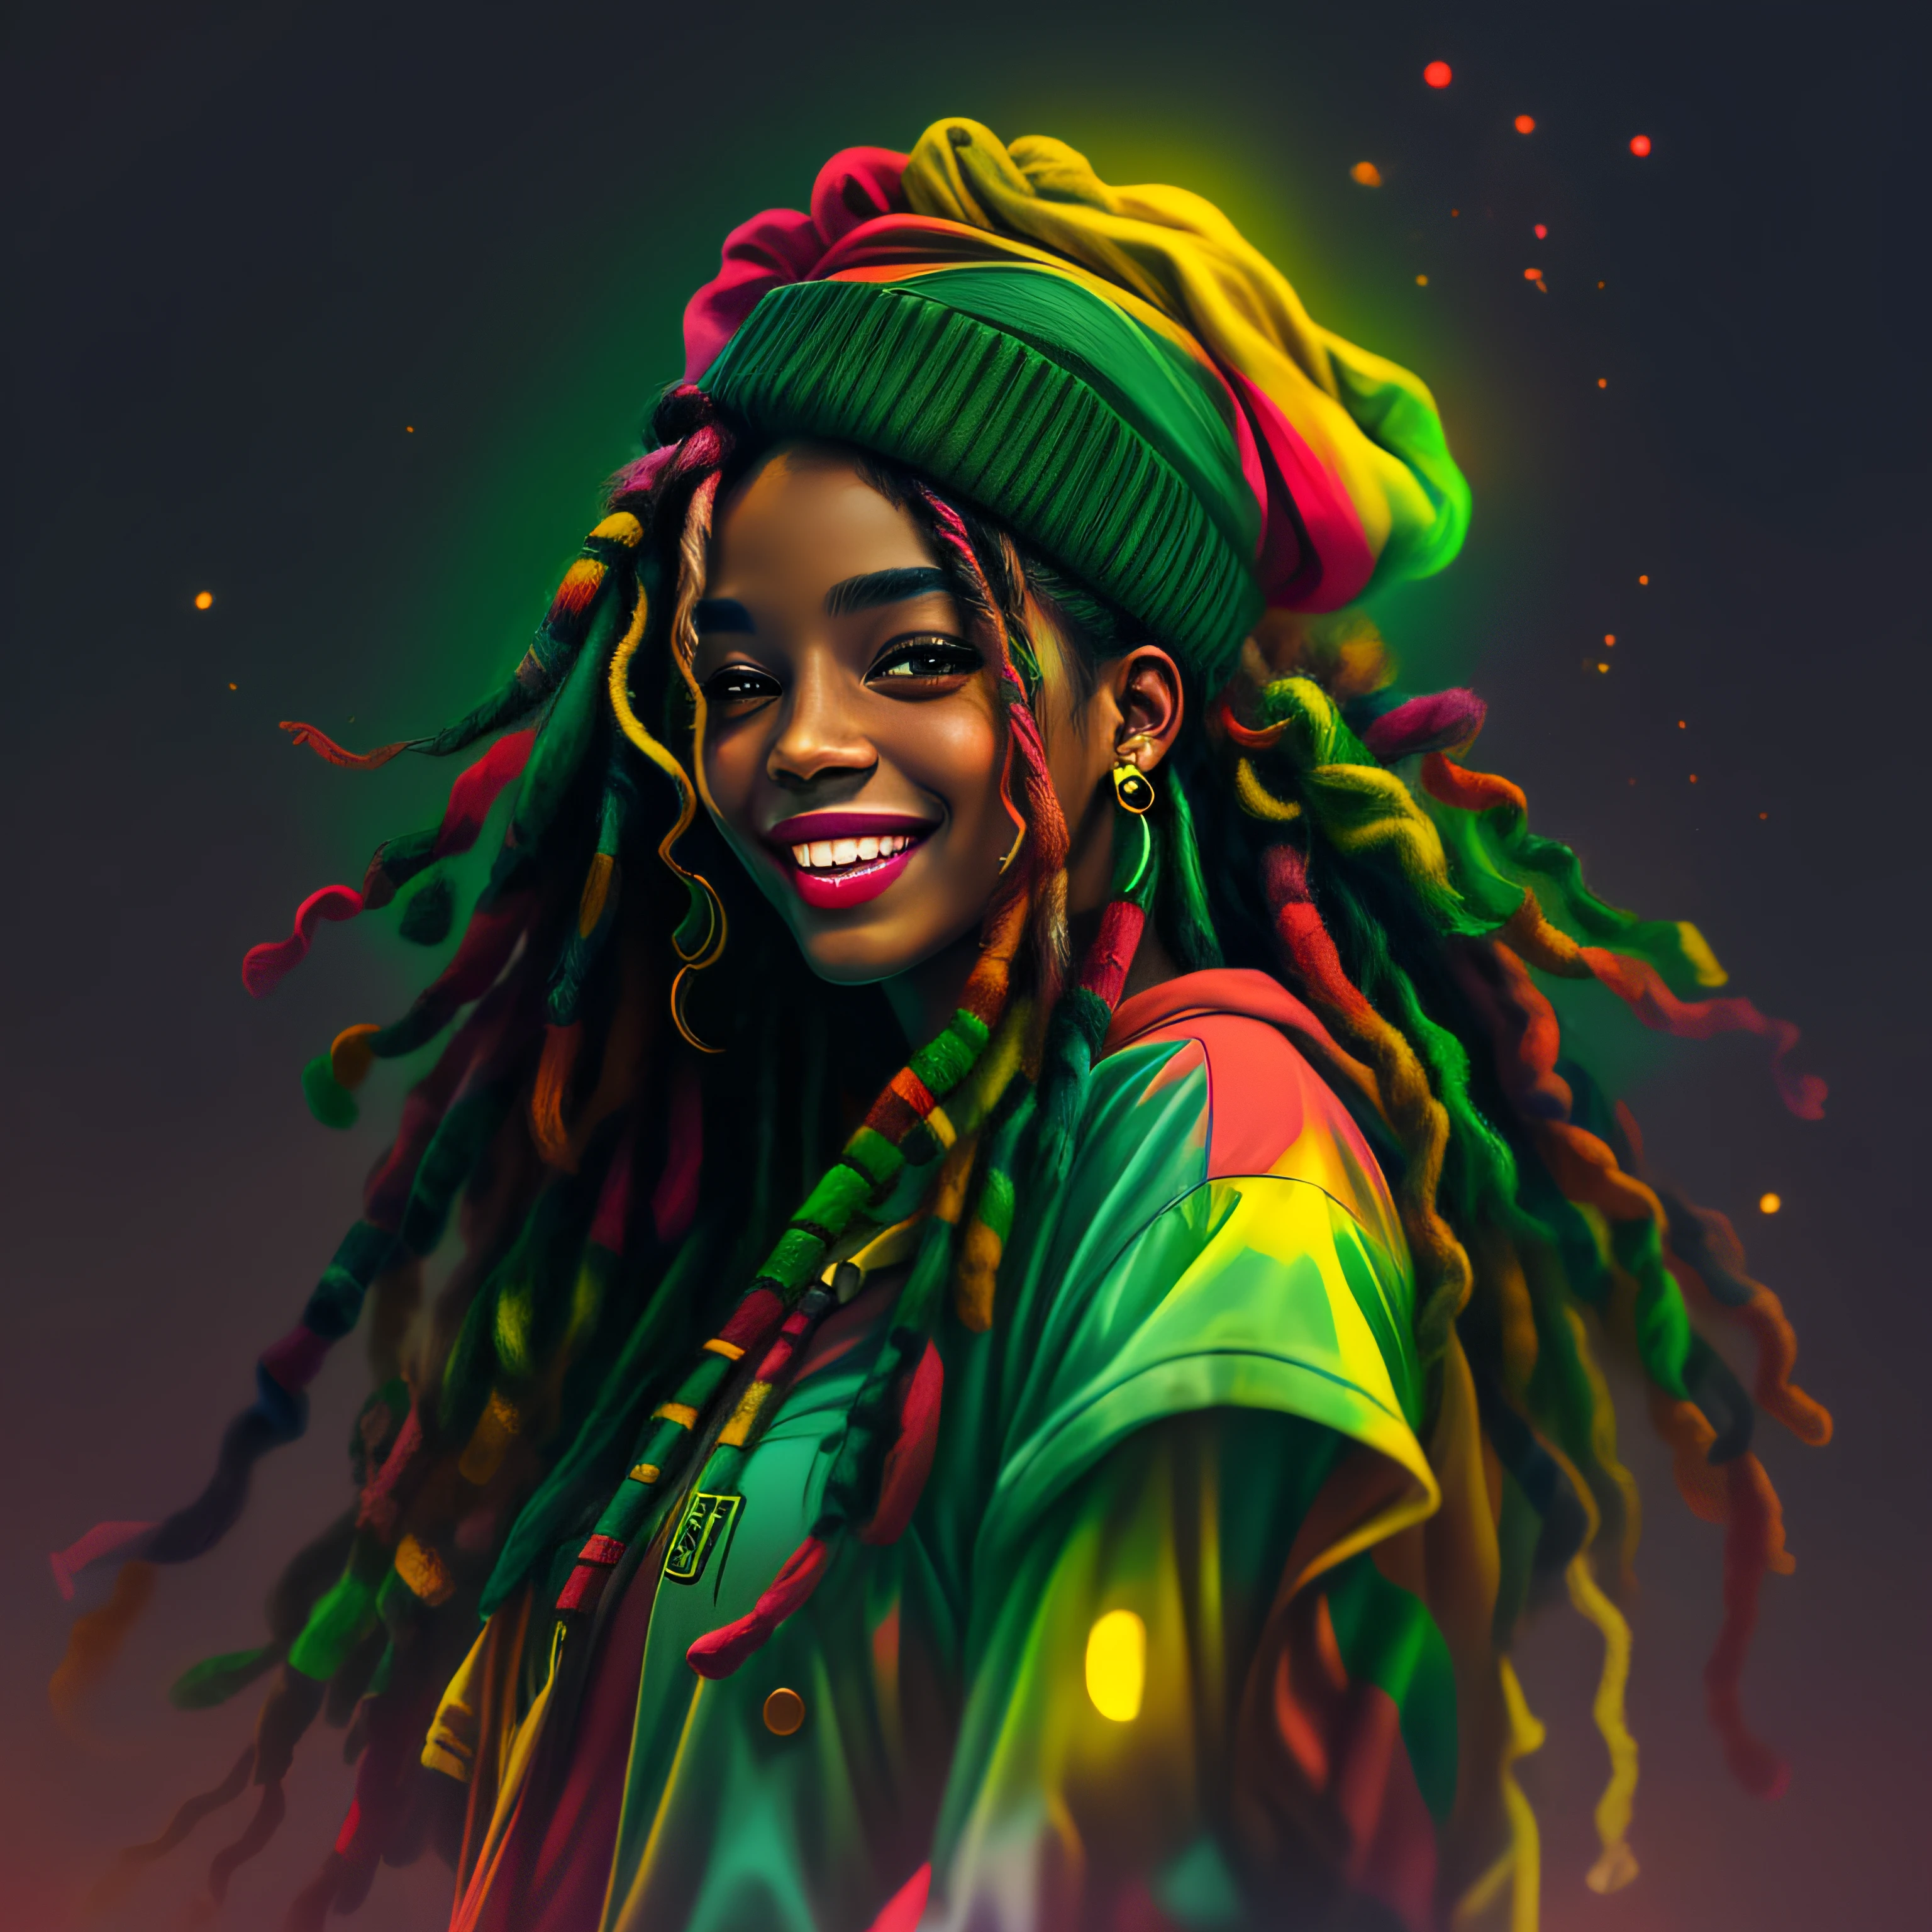 arte do vetor, desfocar arte (1girl Rasta sorrindo com roupas nas cores do reggae) máfia, iluminação cinematográfica estilo neon